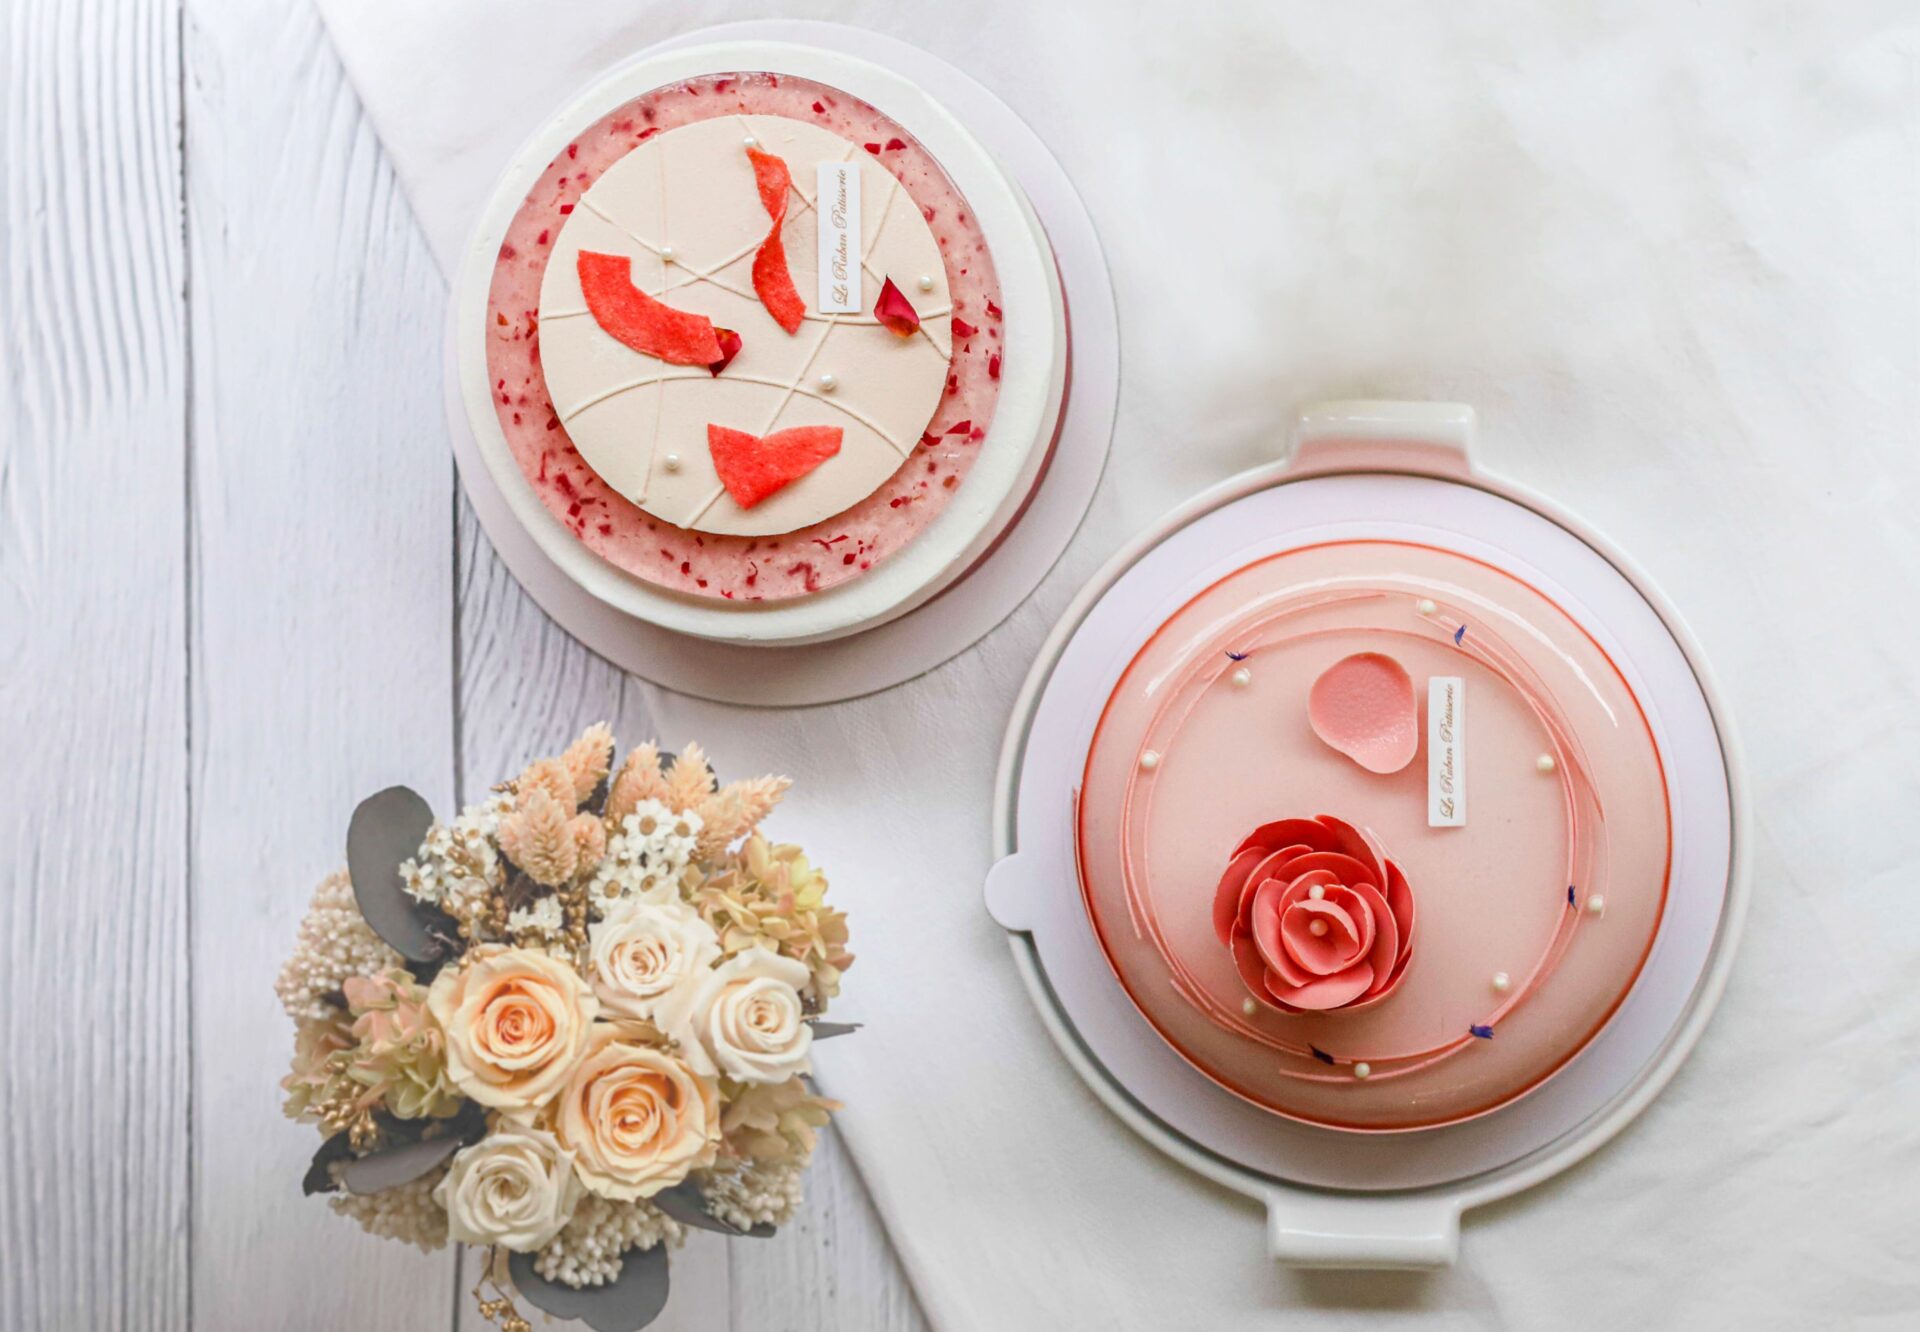 「法朋烘焙甜點坊 」 今年母親節為媽媽們研發設計出帶有酸甜風味的《嫣紅萬紫》和果香十足《蜜桃花語》兩款蛋糕 。